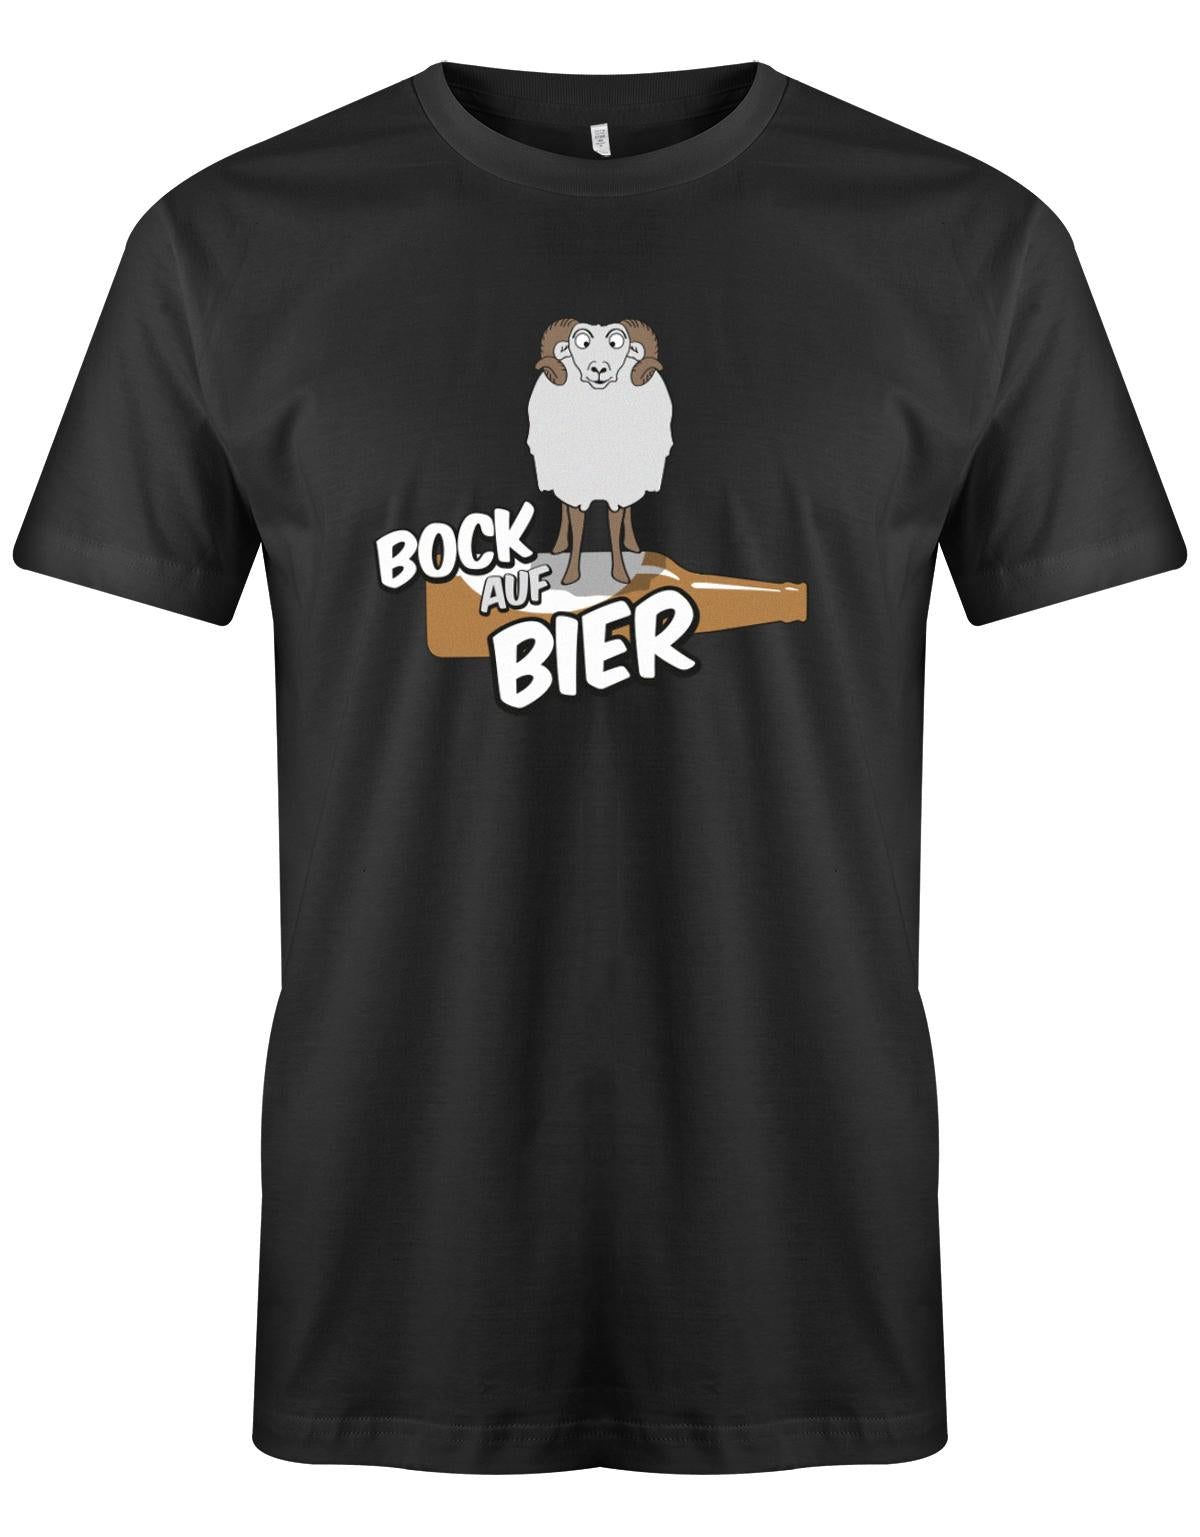 Bock-auf-Bier-Herren-Shirt-Schwarz